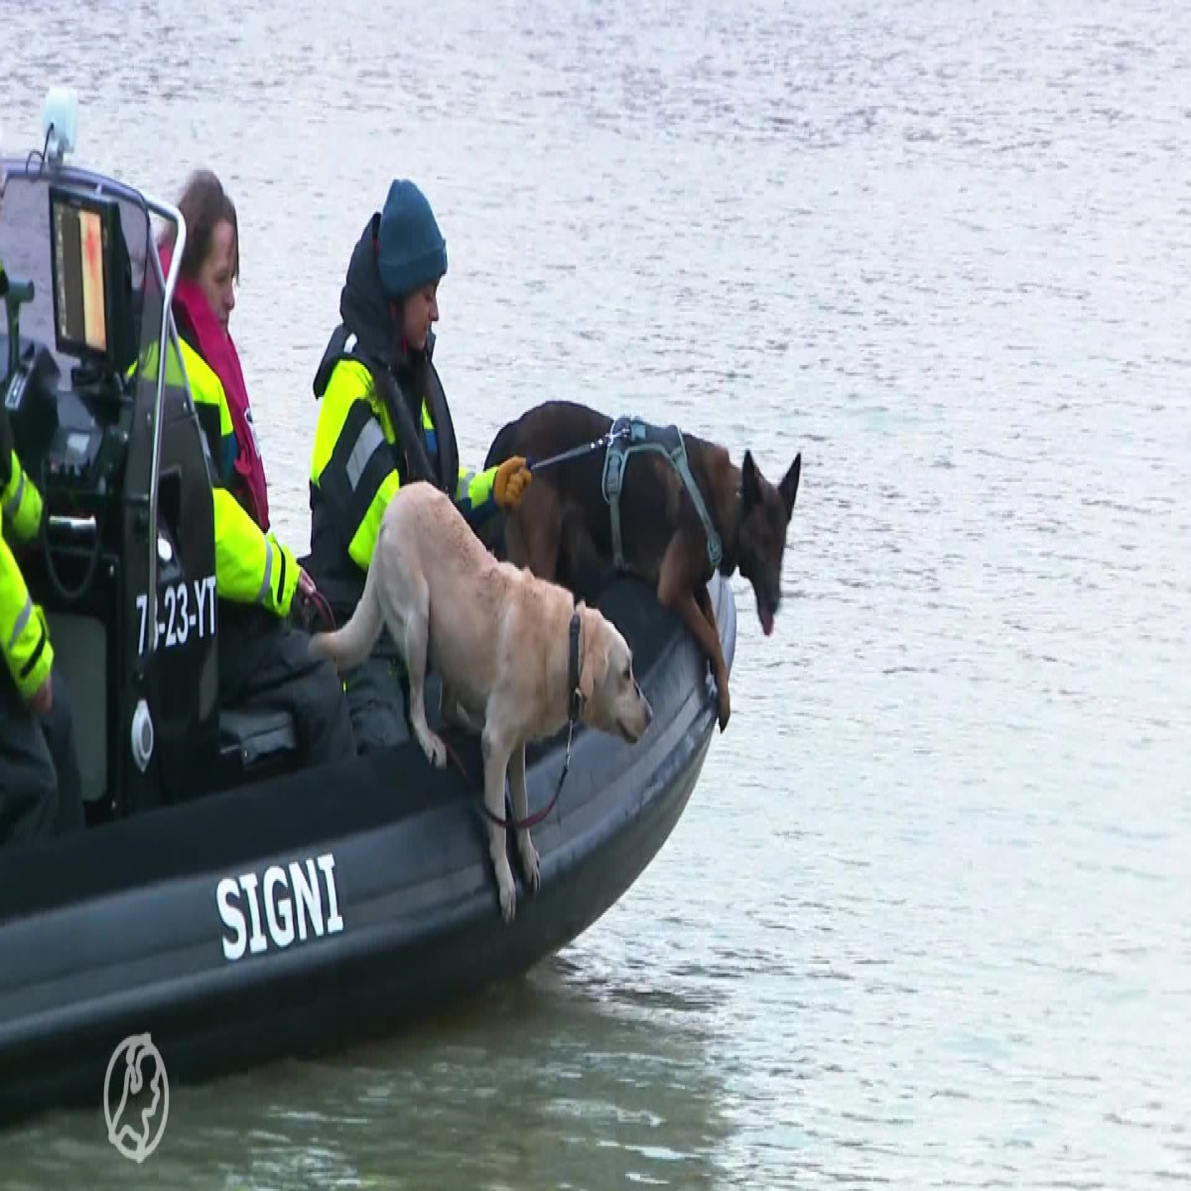 2 zoekhonden in een boot van non profit stichting Signi